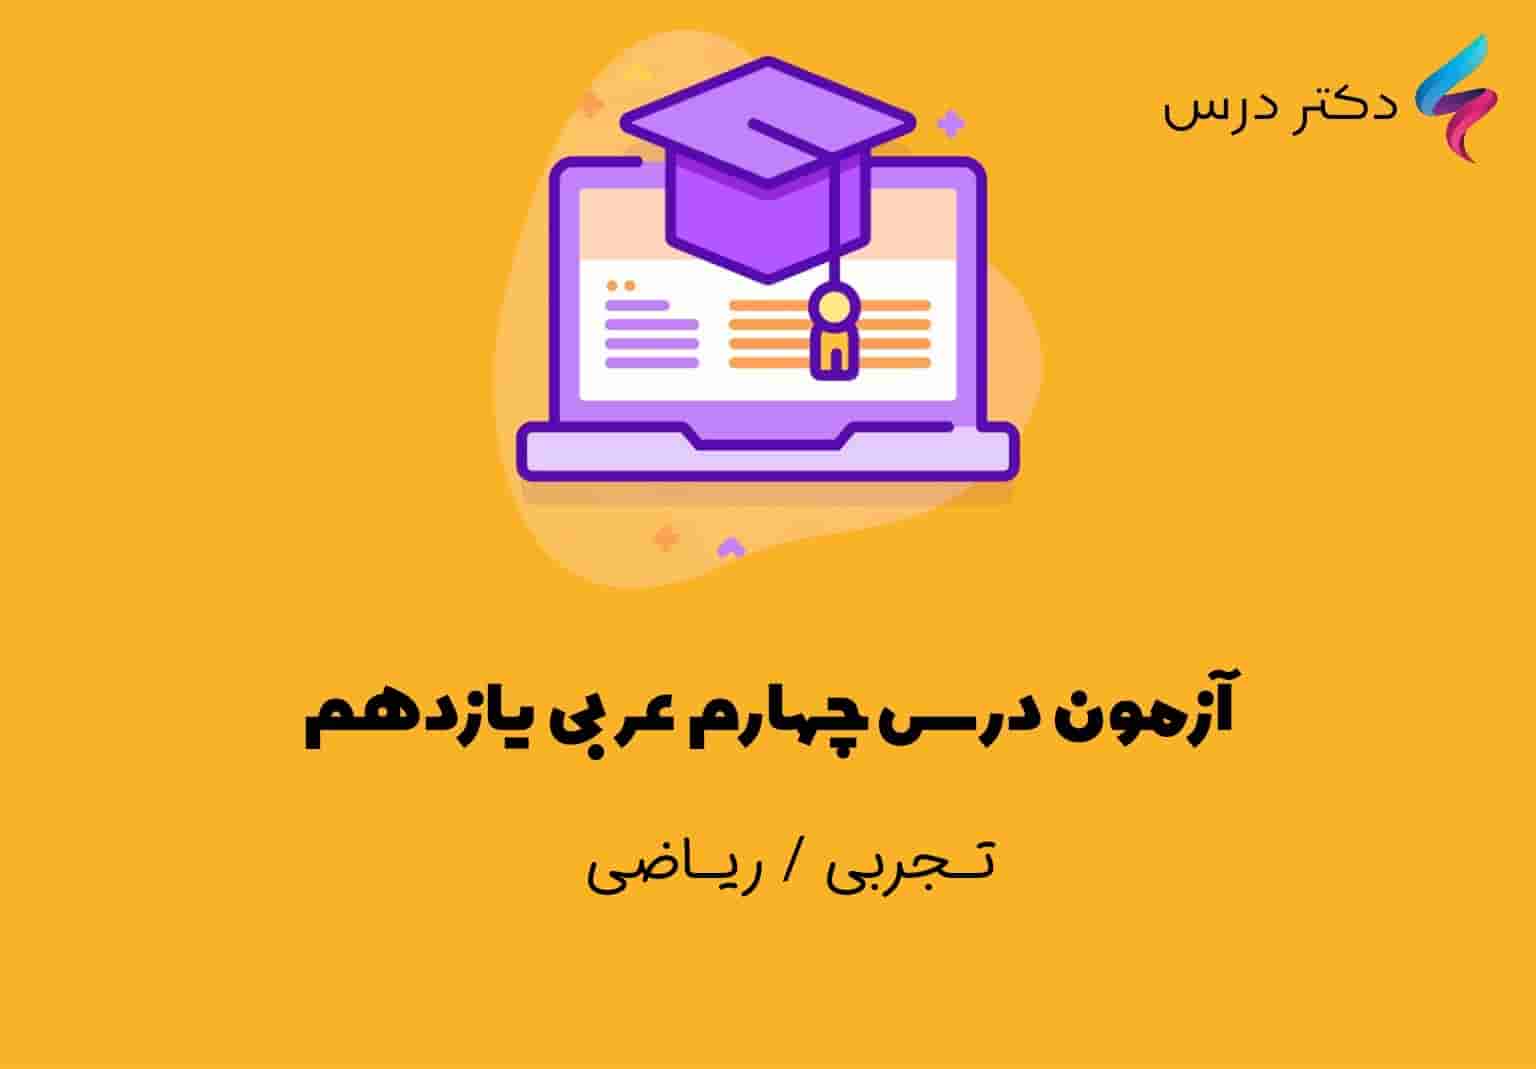 آزمون درس چهارم عربی یازدهم تجربی و ریاضی فیزیک همراه با سوالاتی تستی که دارای جواب هستند